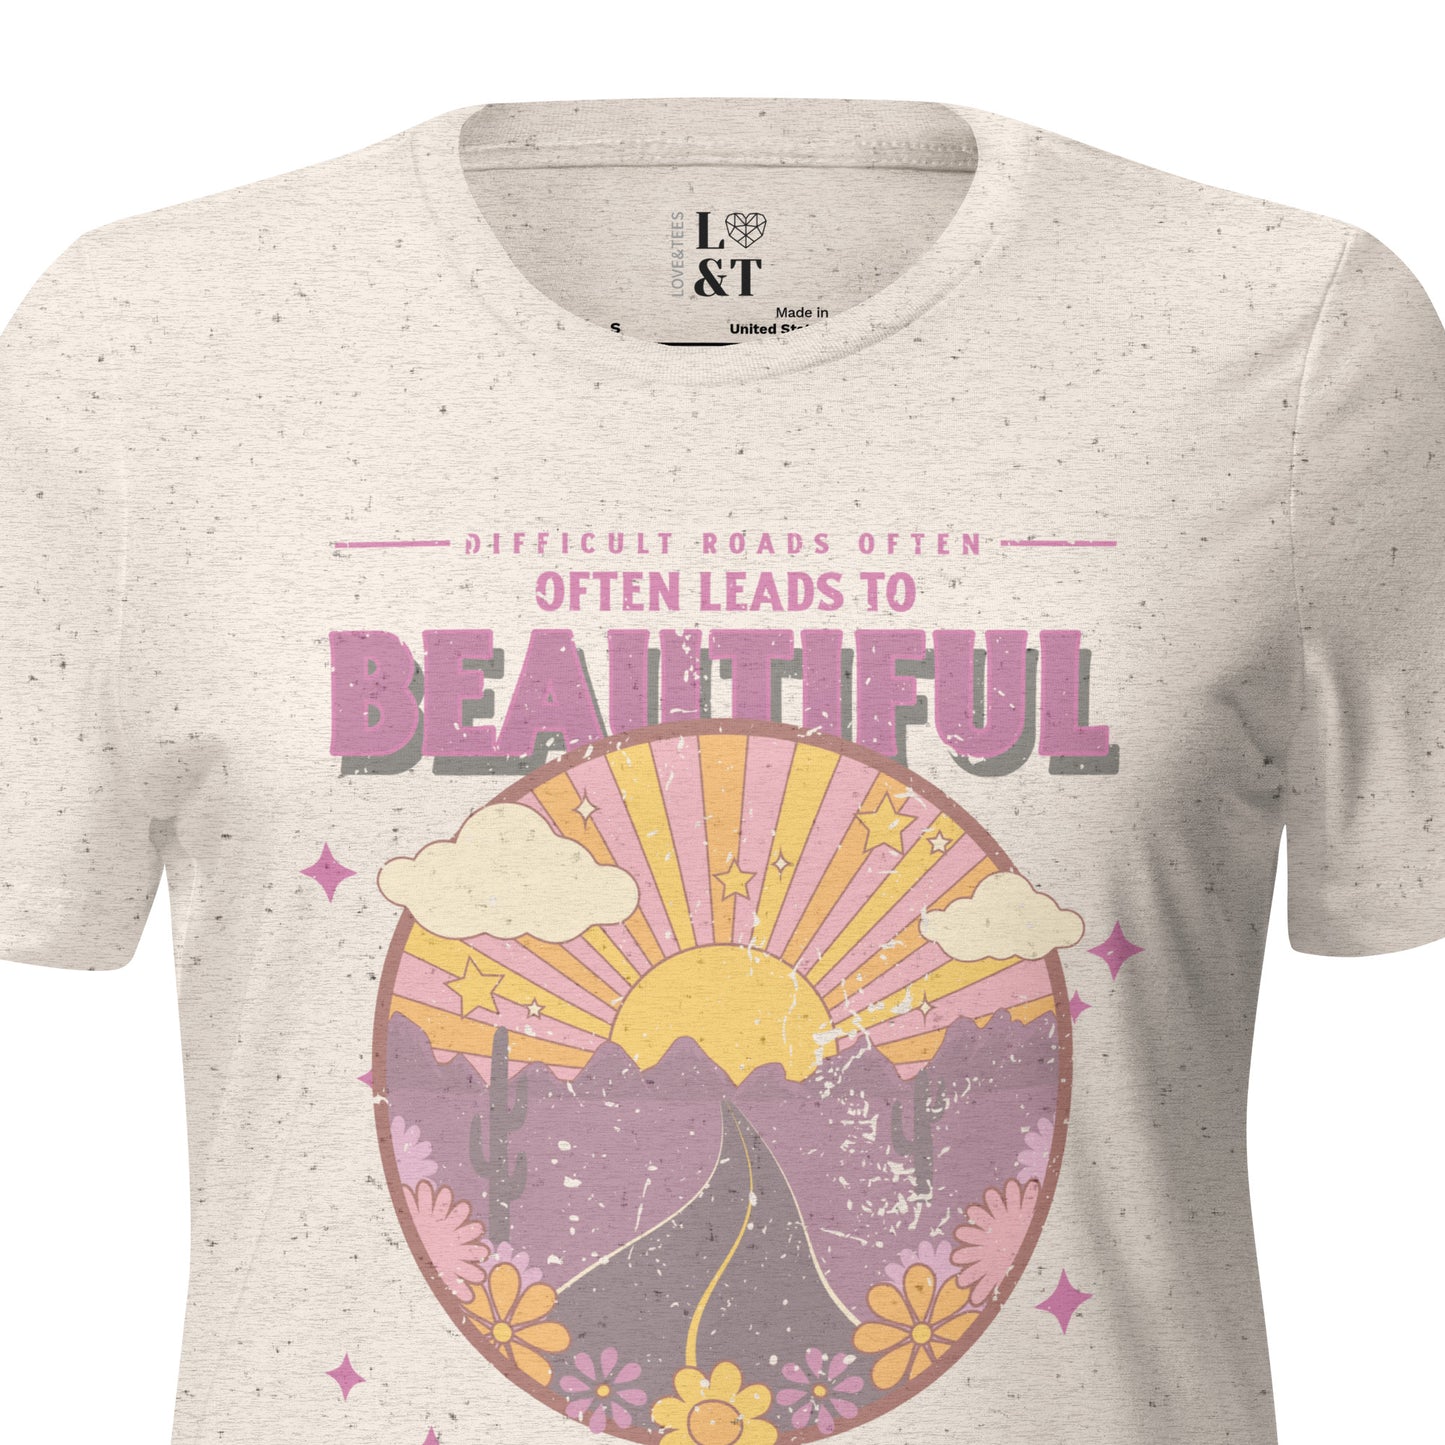 Beautiful Destination Women’s Relaxed Tri-Blend T-Shirt